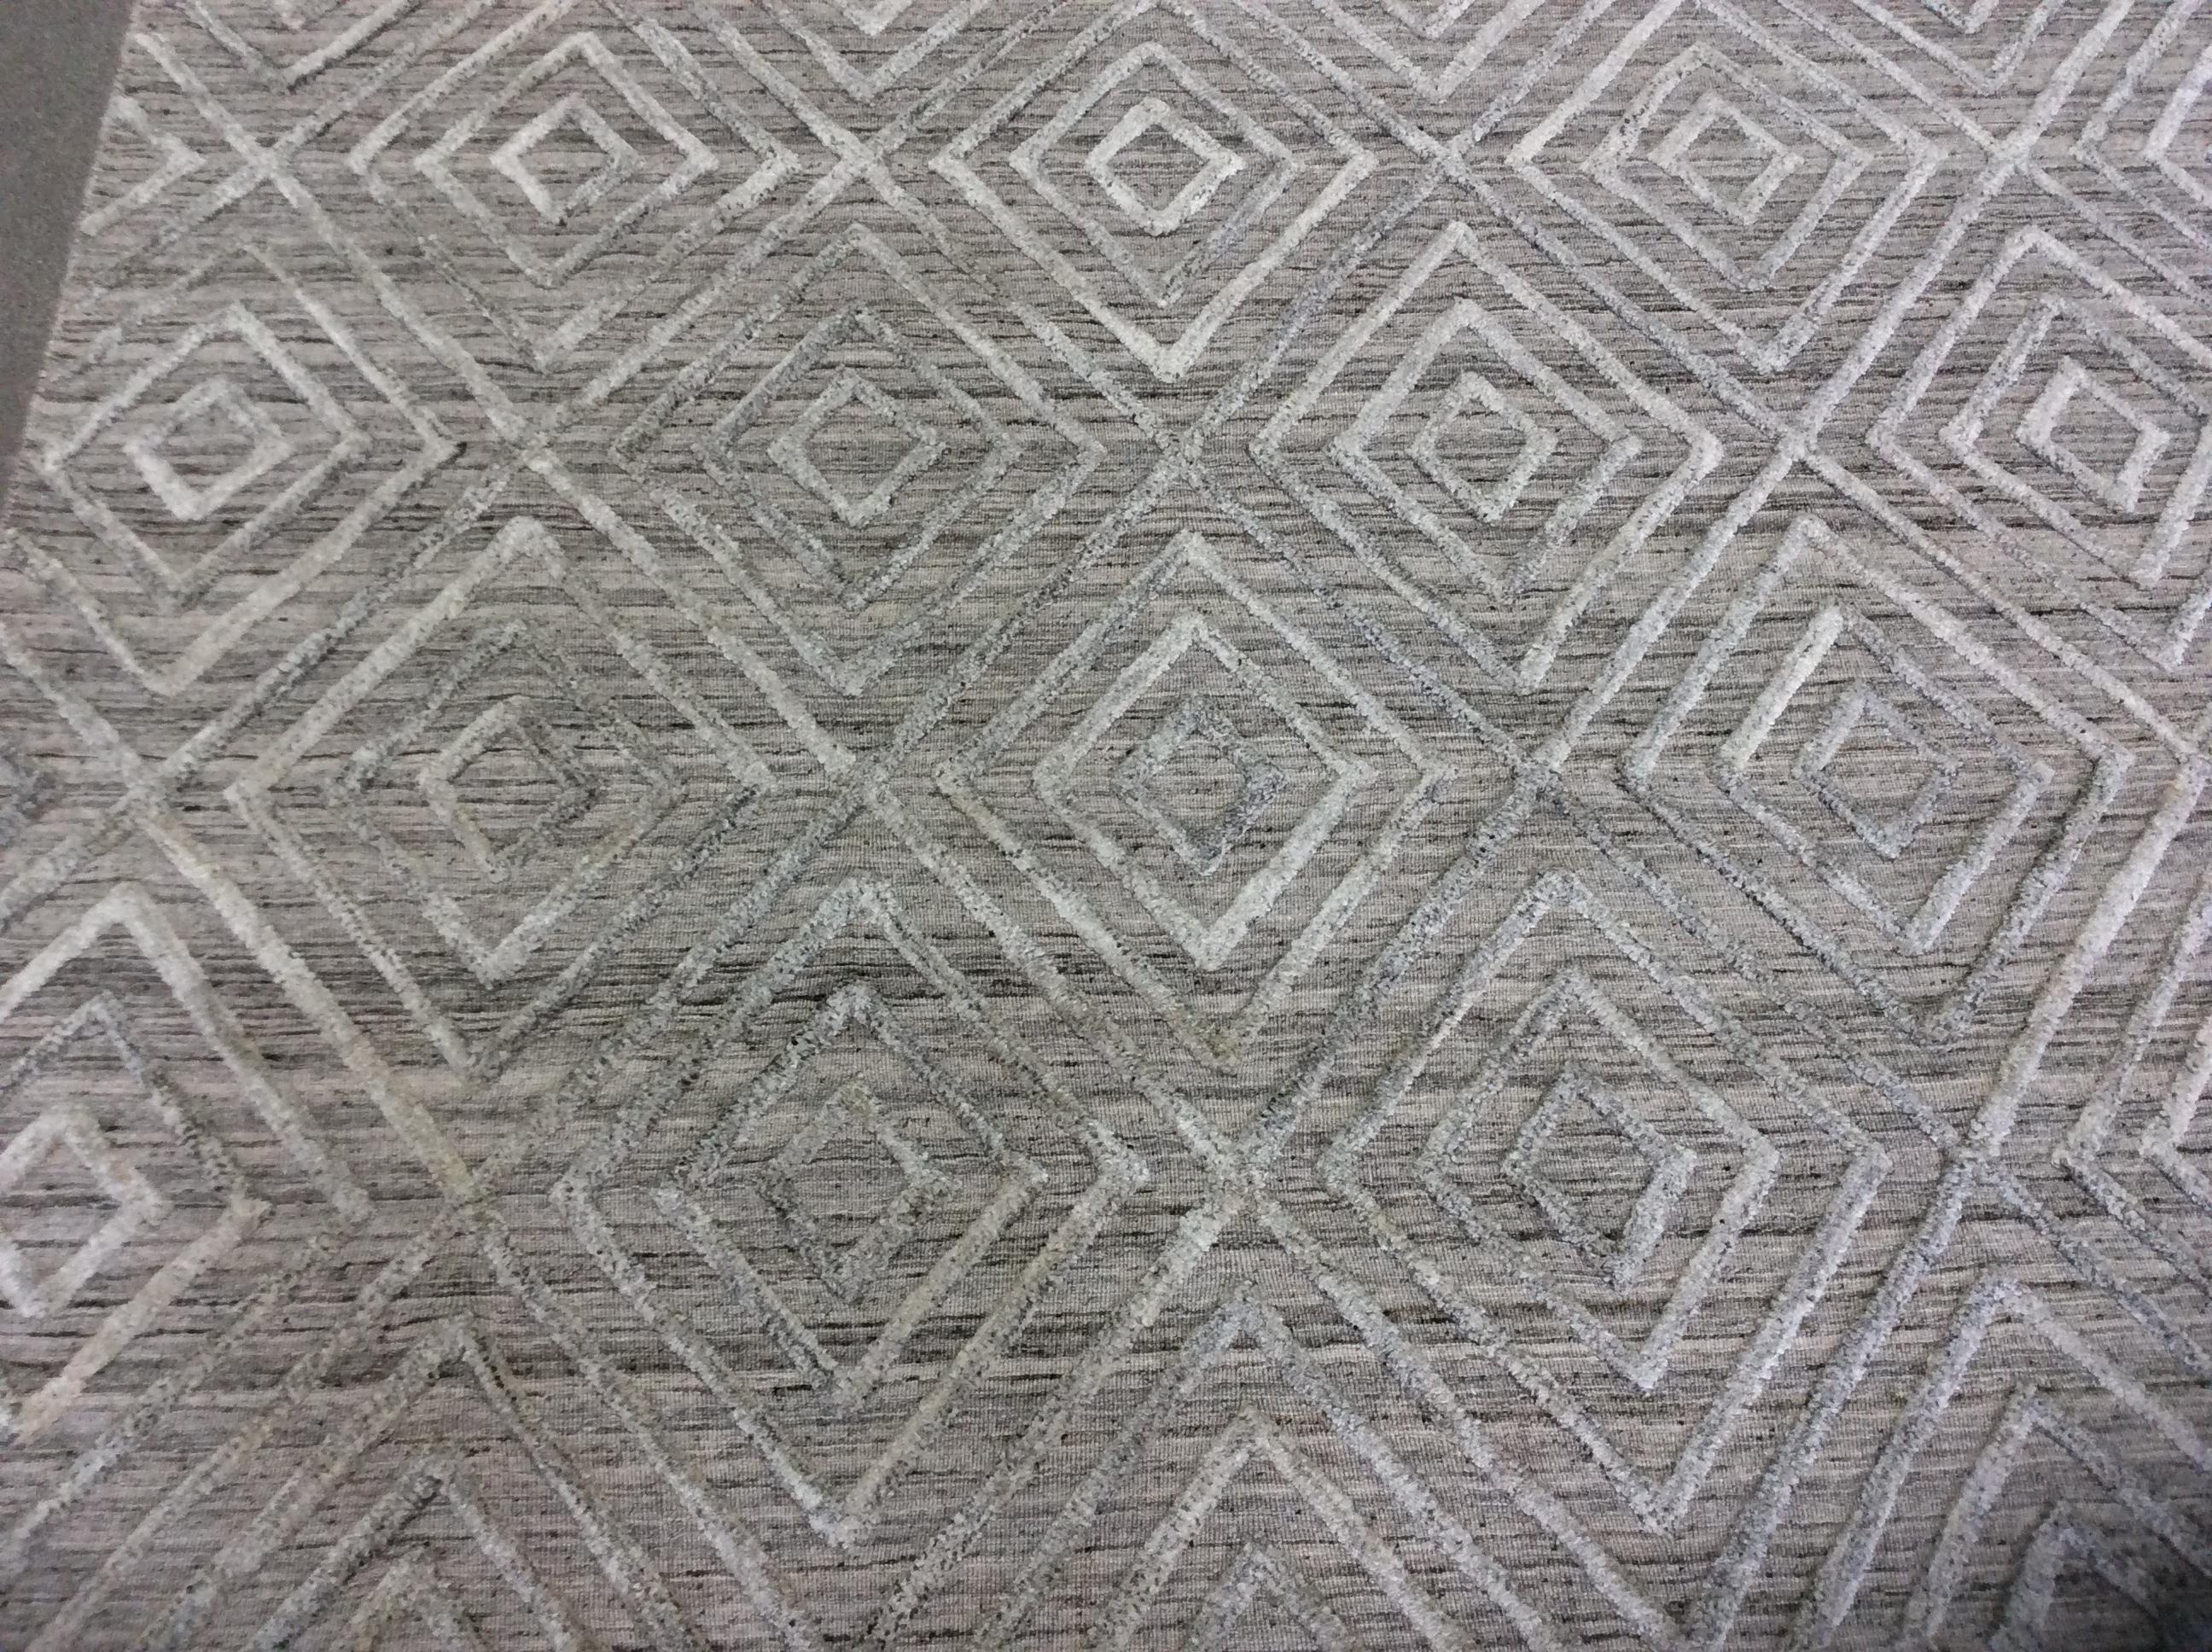 Geometrischer, niedriger, moderner Teppich aus blauem Leinen.

Das hohe, niedrige Design sorgt für einen lässigen, aber polierten Look. Mit neutraler Farbe und erhabenem geometrischem Muster.